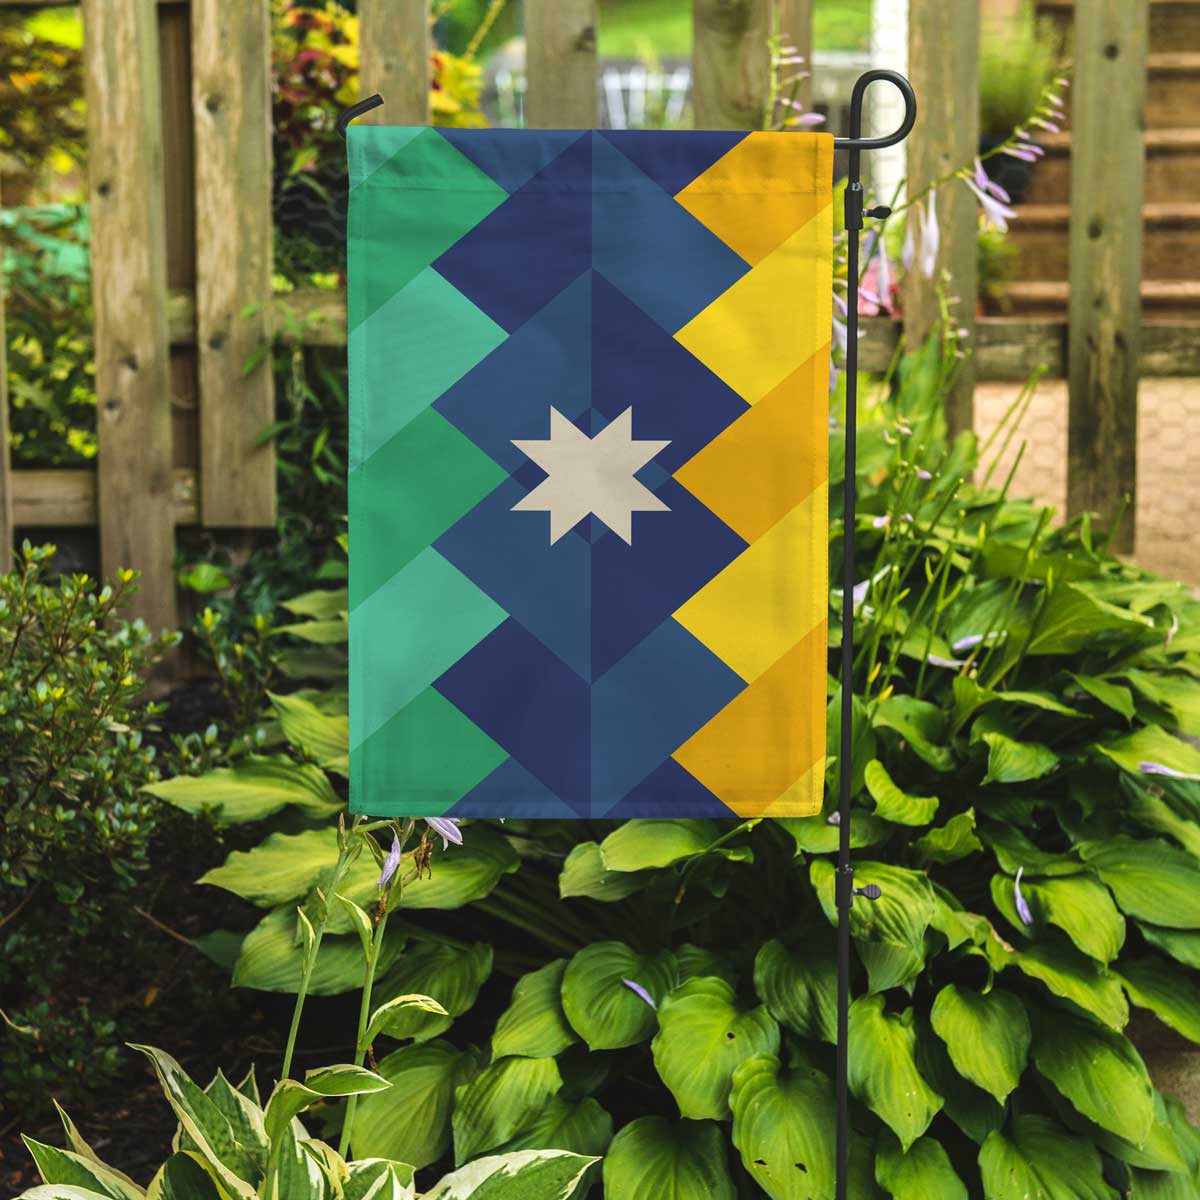 appalachia garden flag in outdoor setting